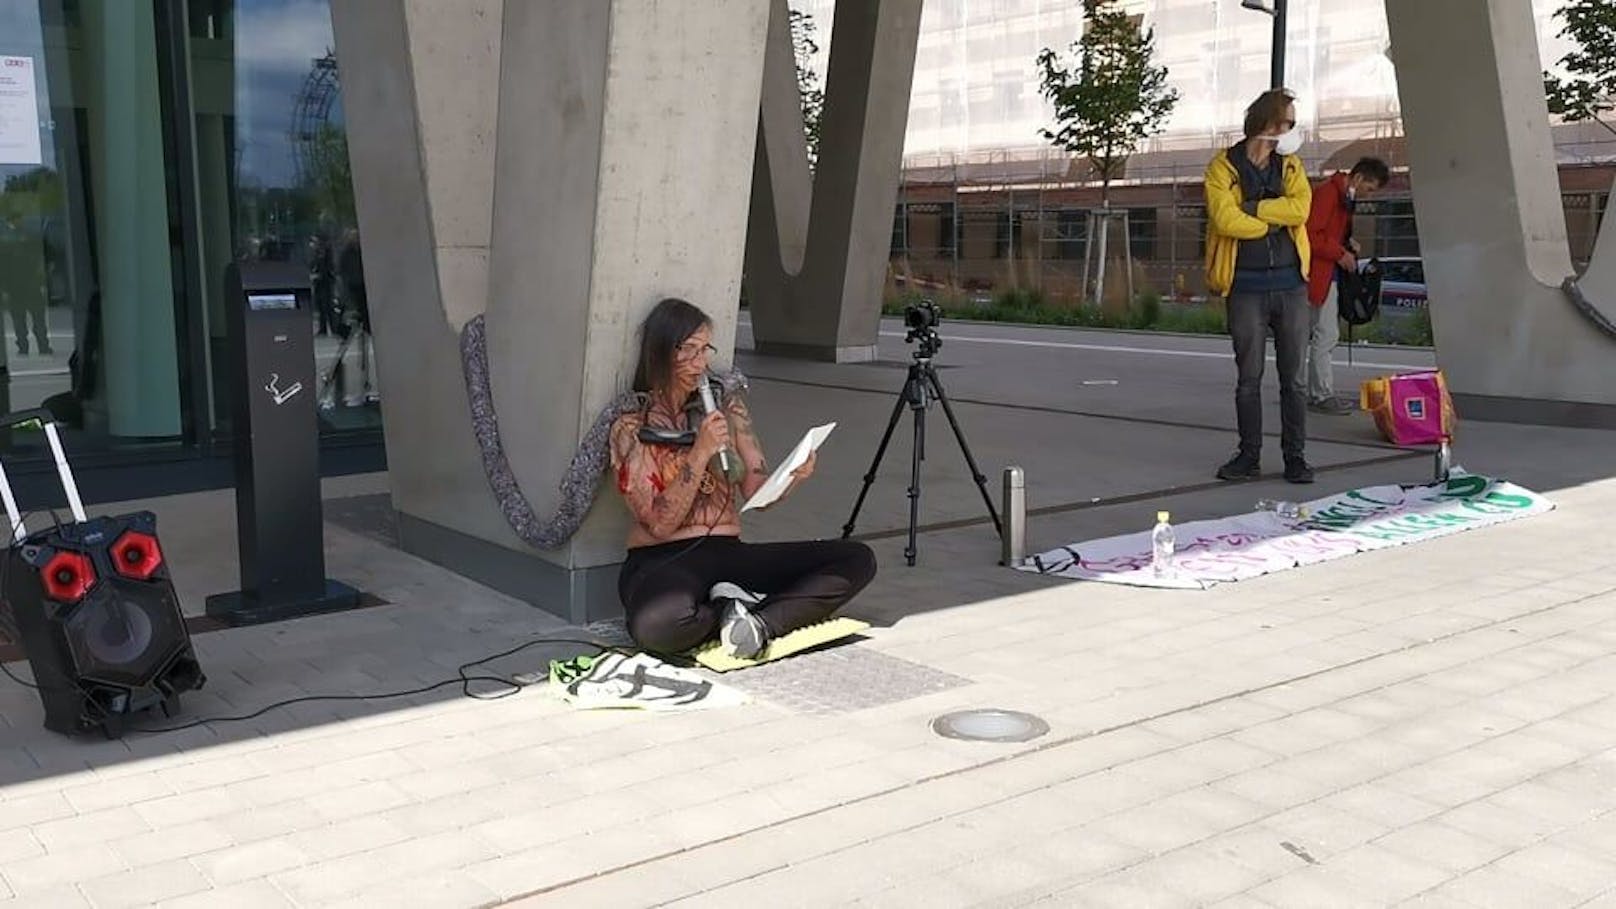 Eine Aktivistin kettete sich am Donnerstag am Praterstern an einen Betonpfeiler.